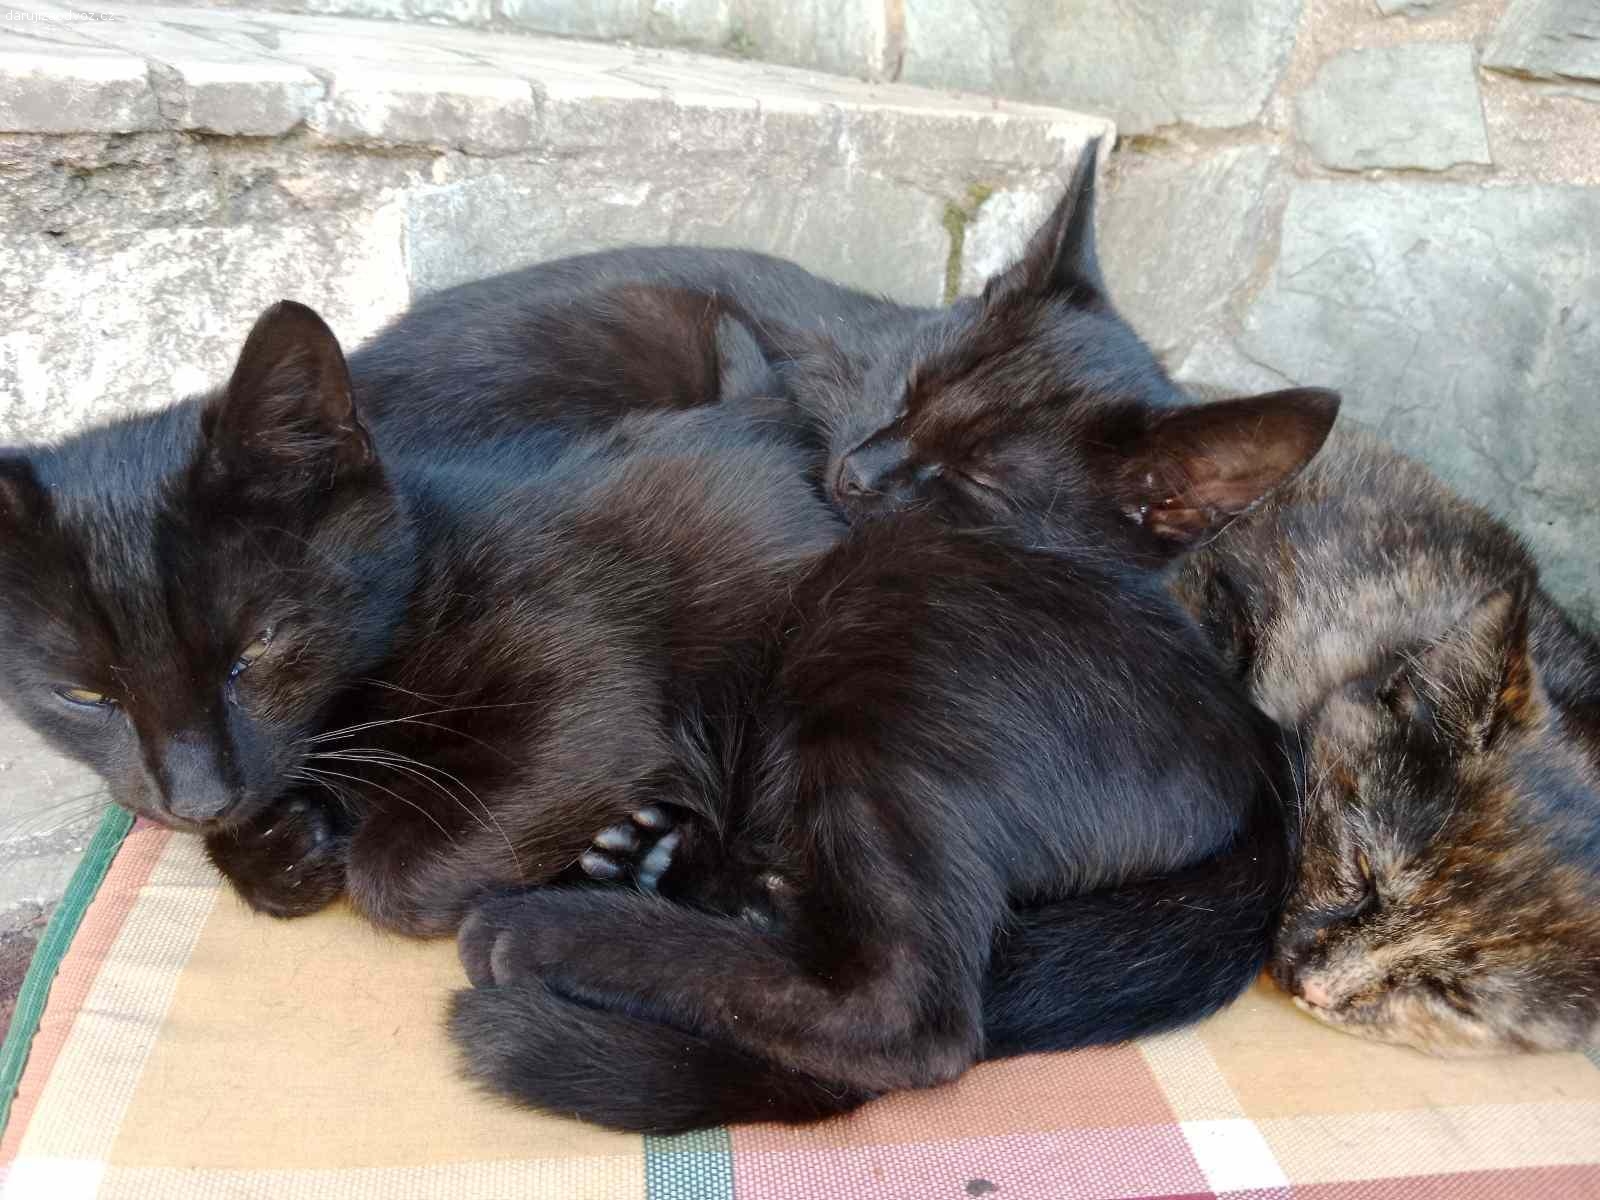 Daruji tři koťata i po jednom plus 1kg granule. Dva černí kocouři  s hebkou srstí 
a jedna kočička černo-mourovatá všechny koťata jsou čtyři měsíce stará